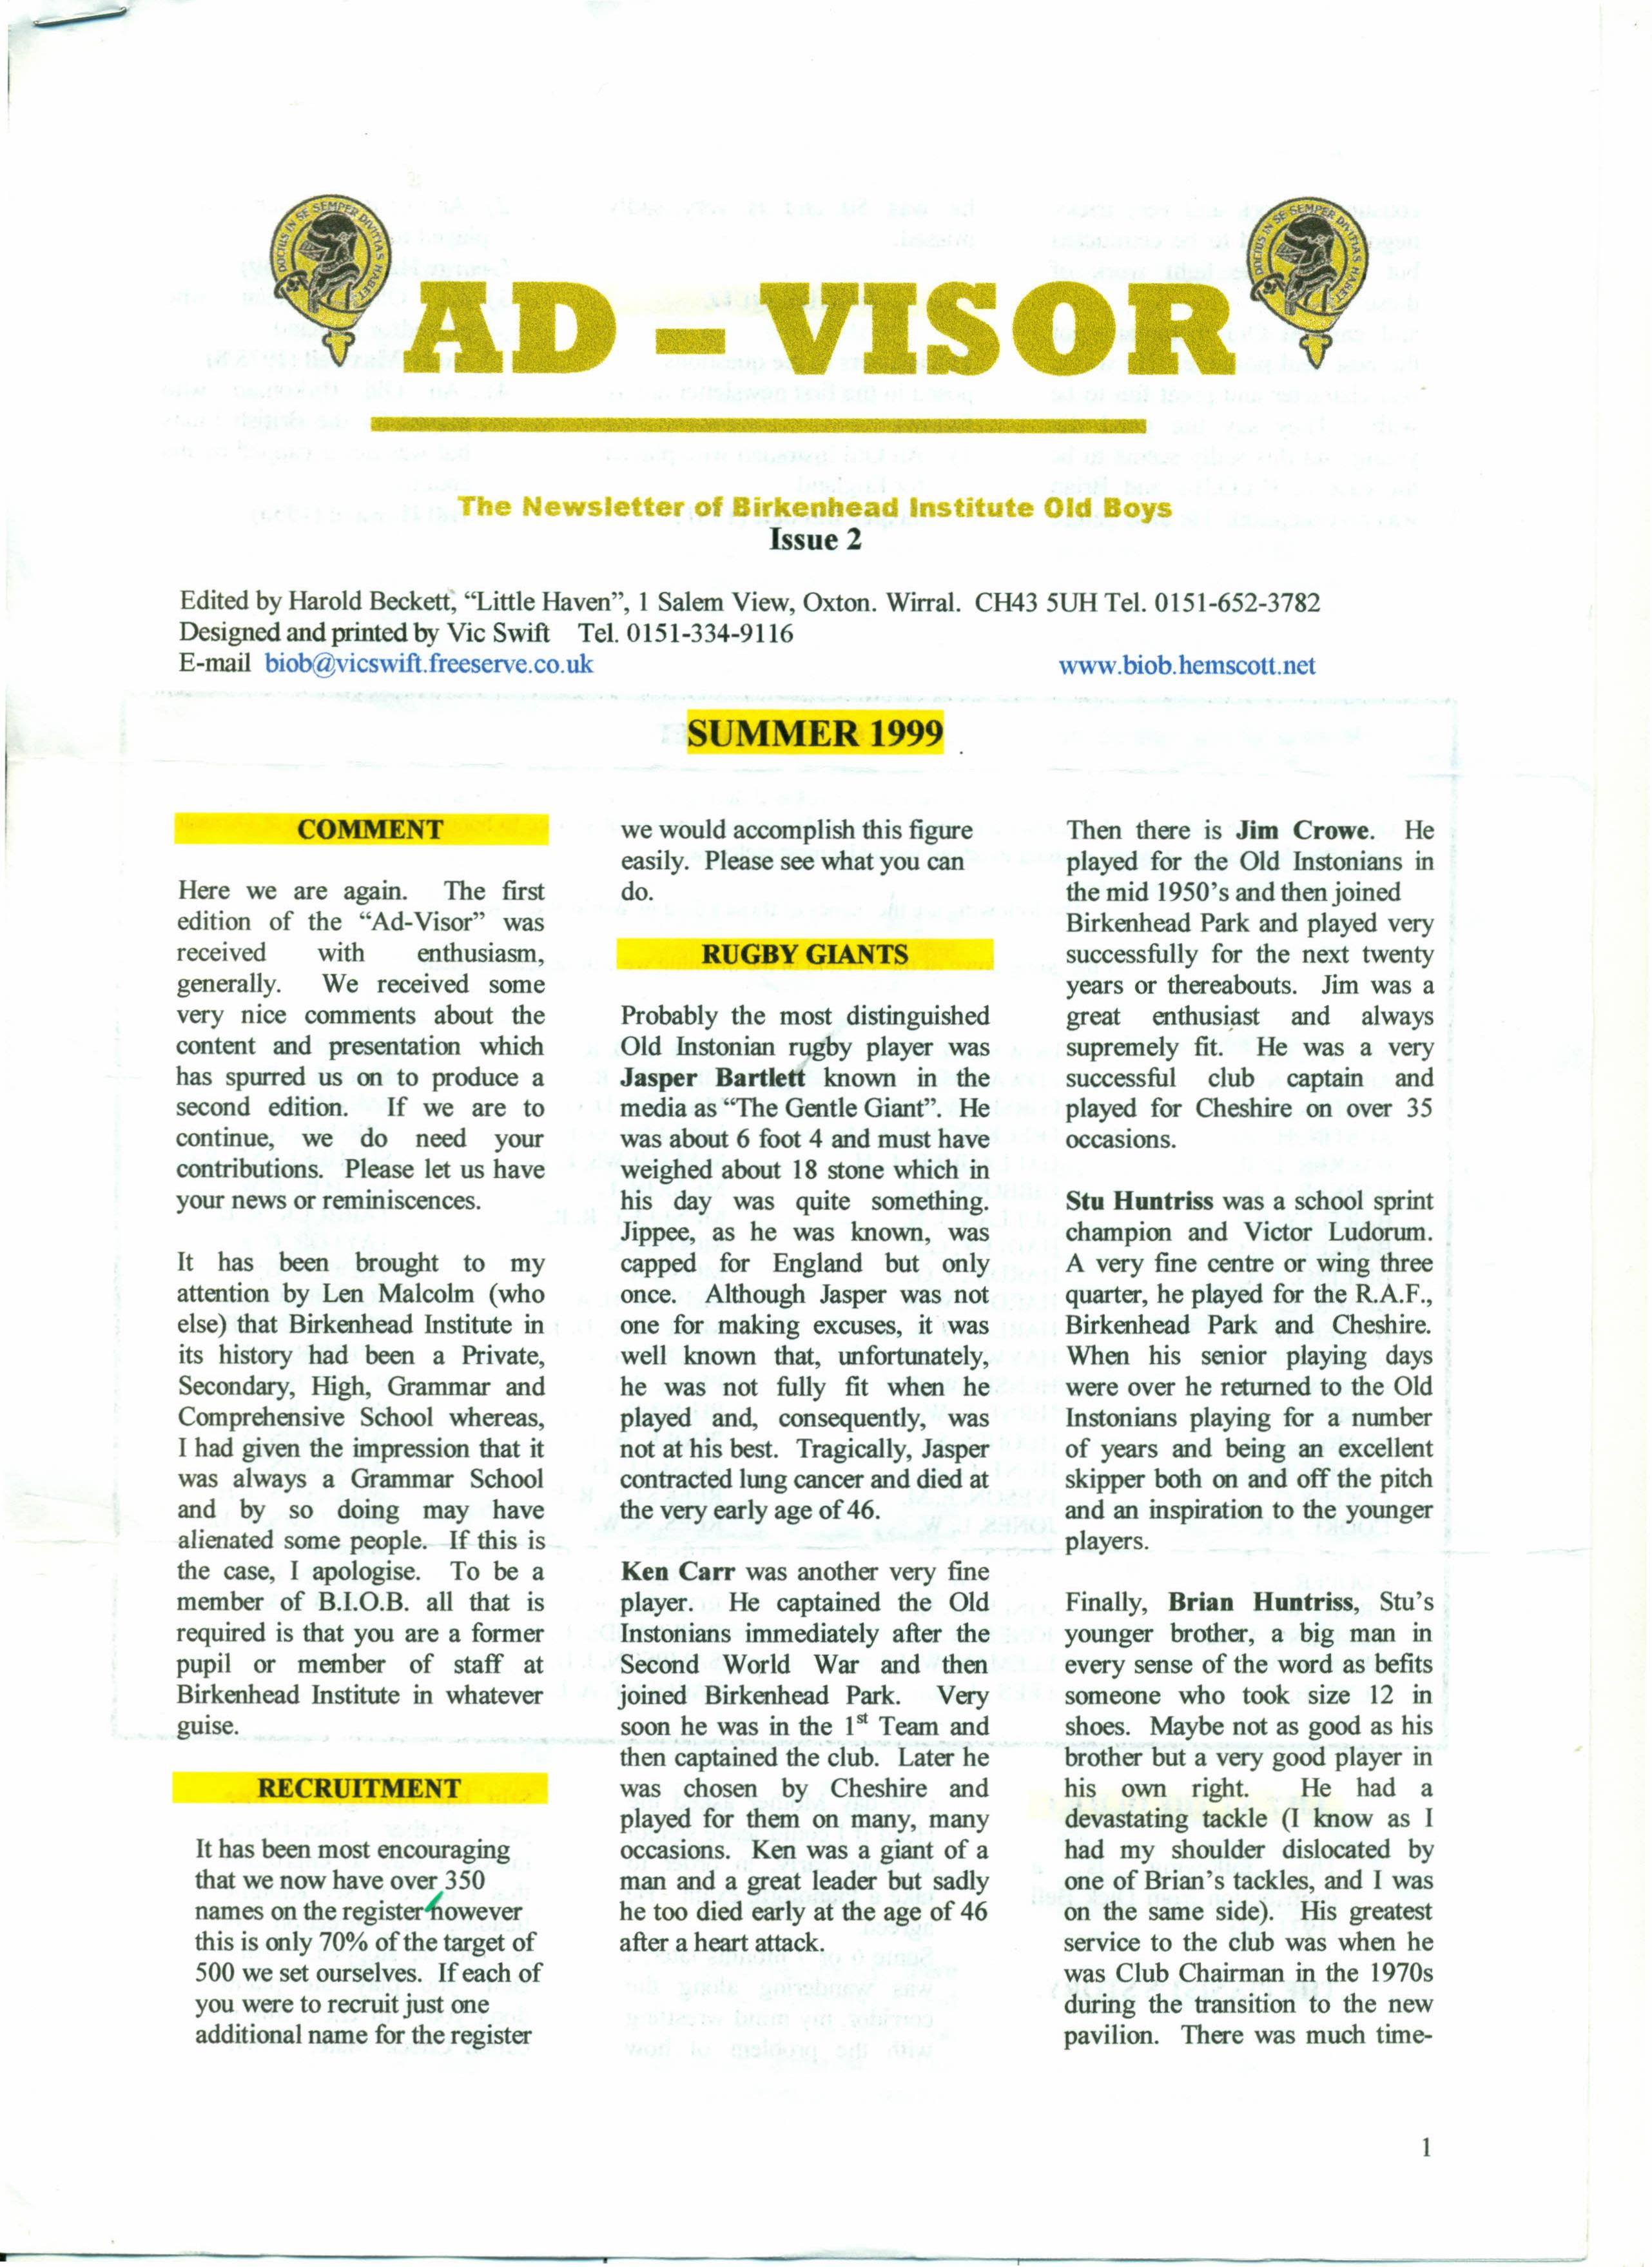 Ad-Visor Summer 1999